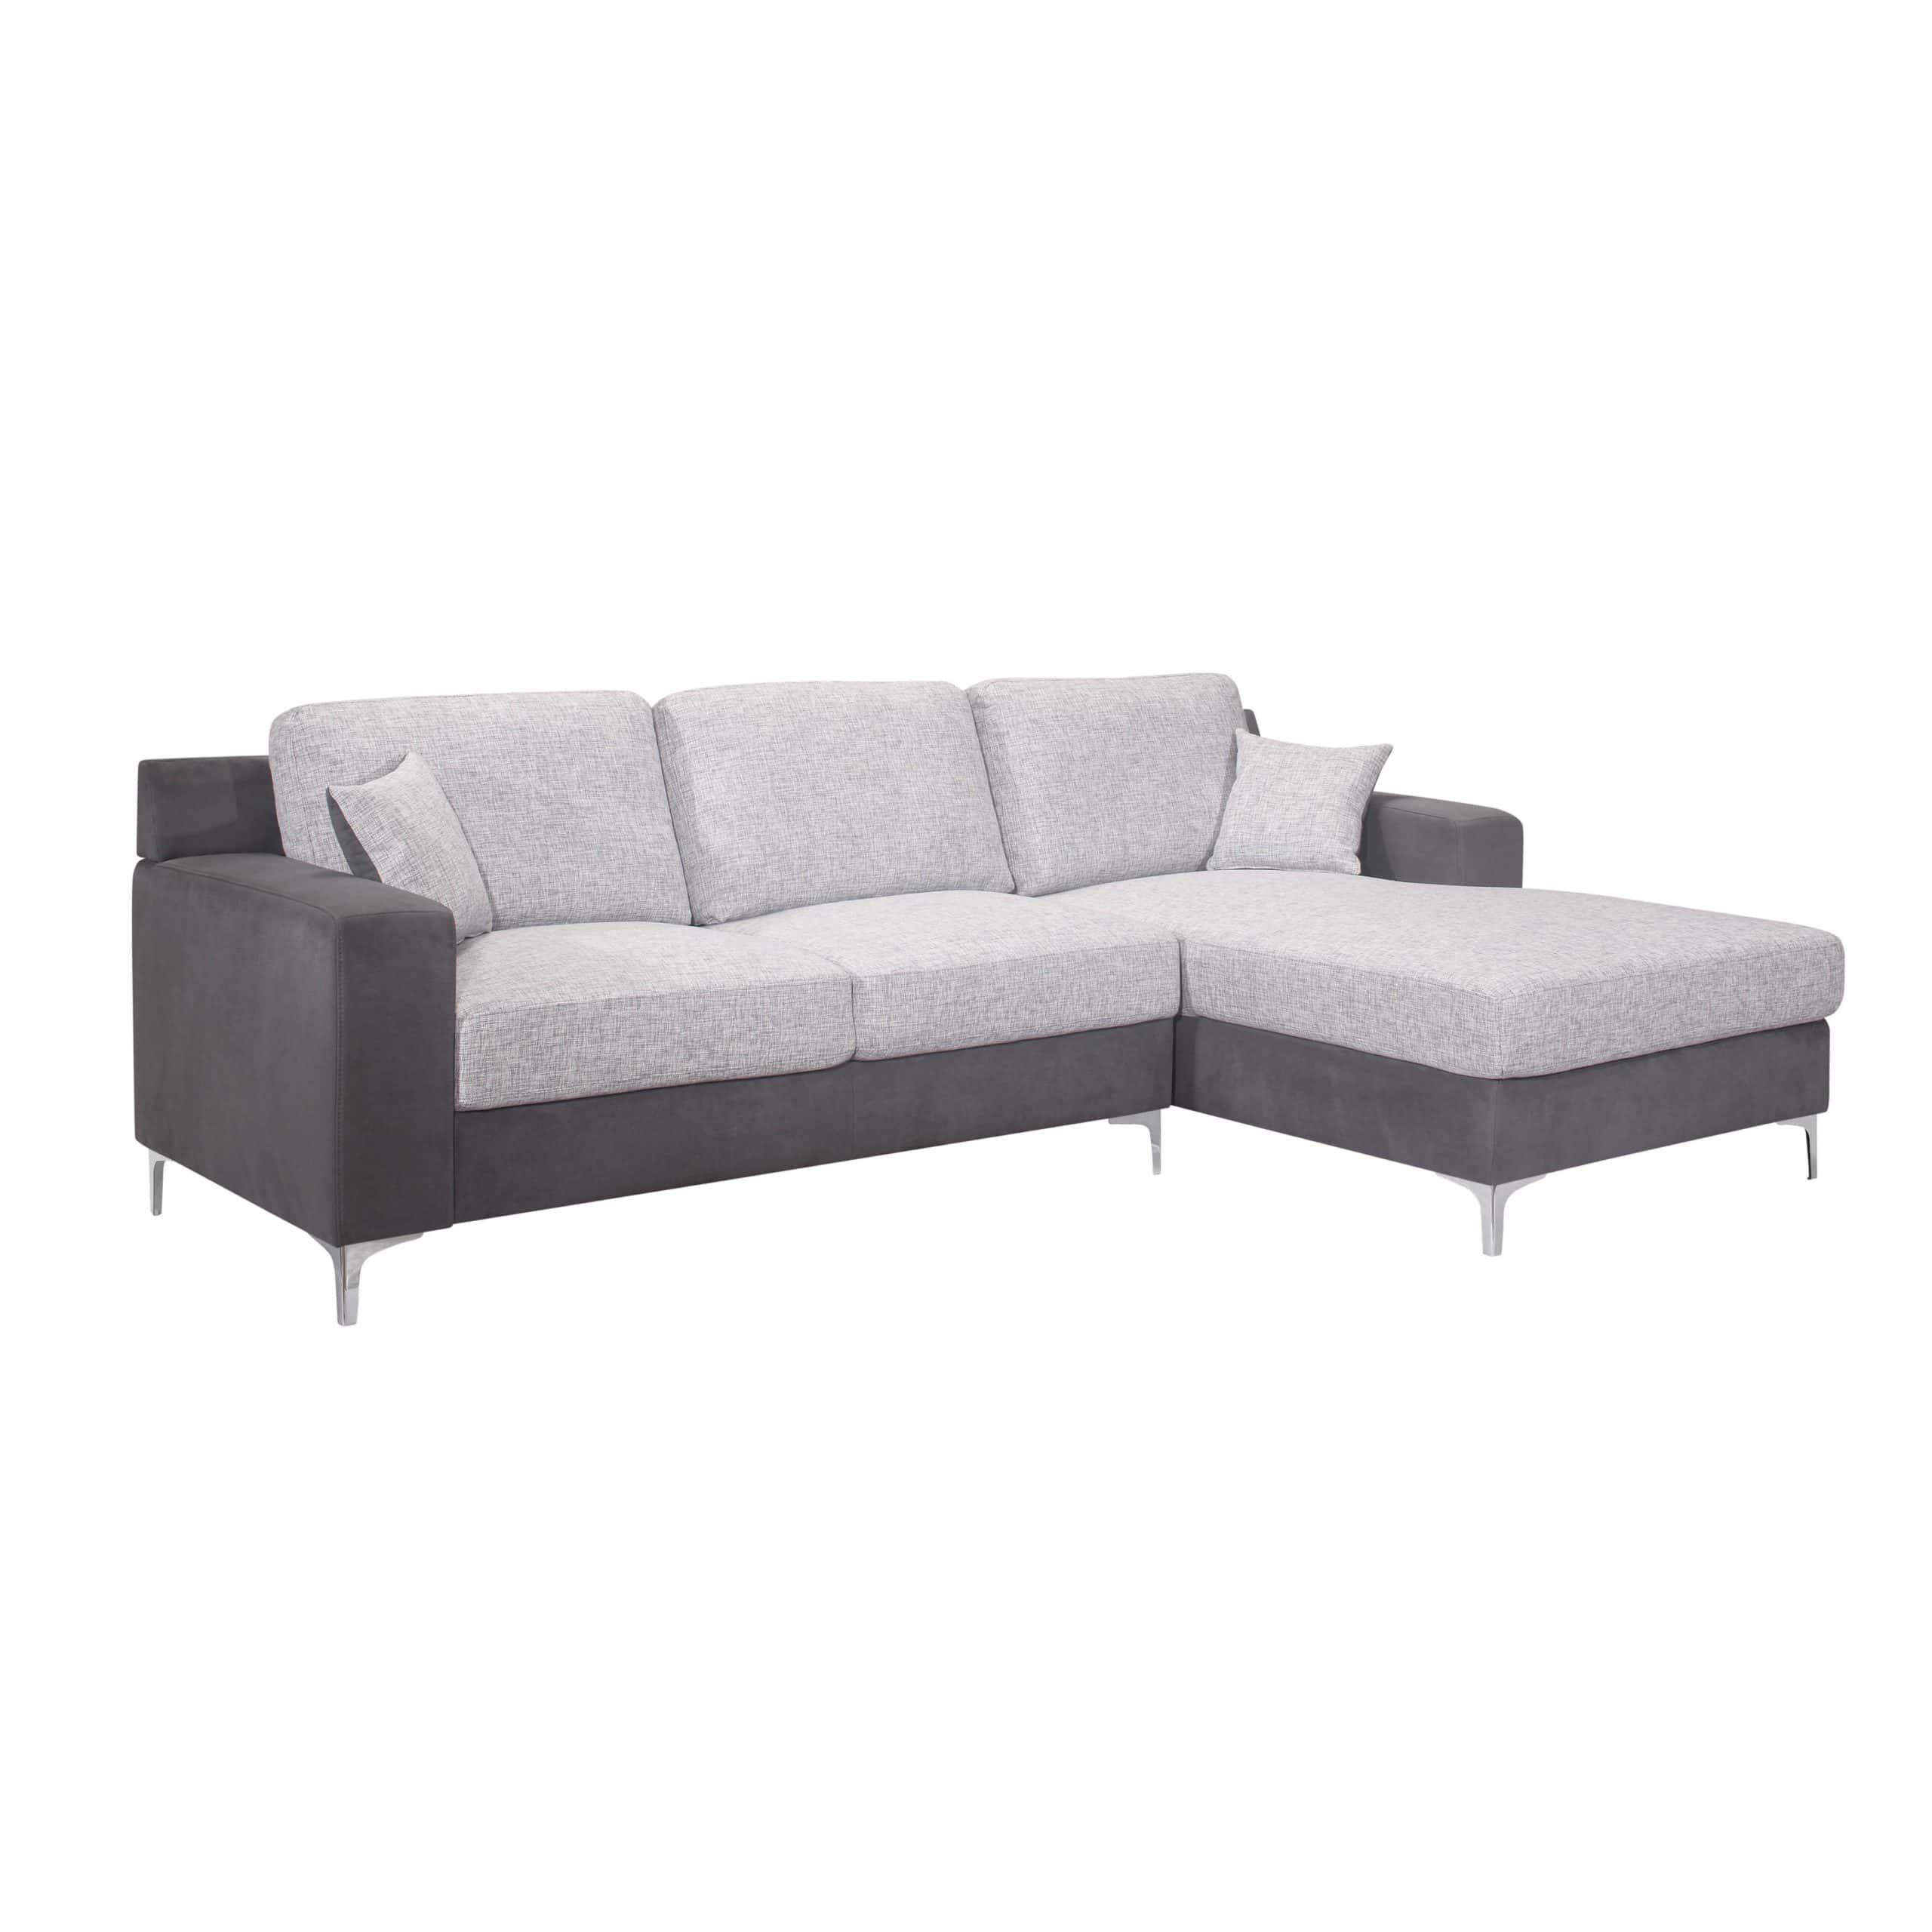 

    
U967 Contemporary  Light Gray/Dark Gray Sectional Sofa Global USA
